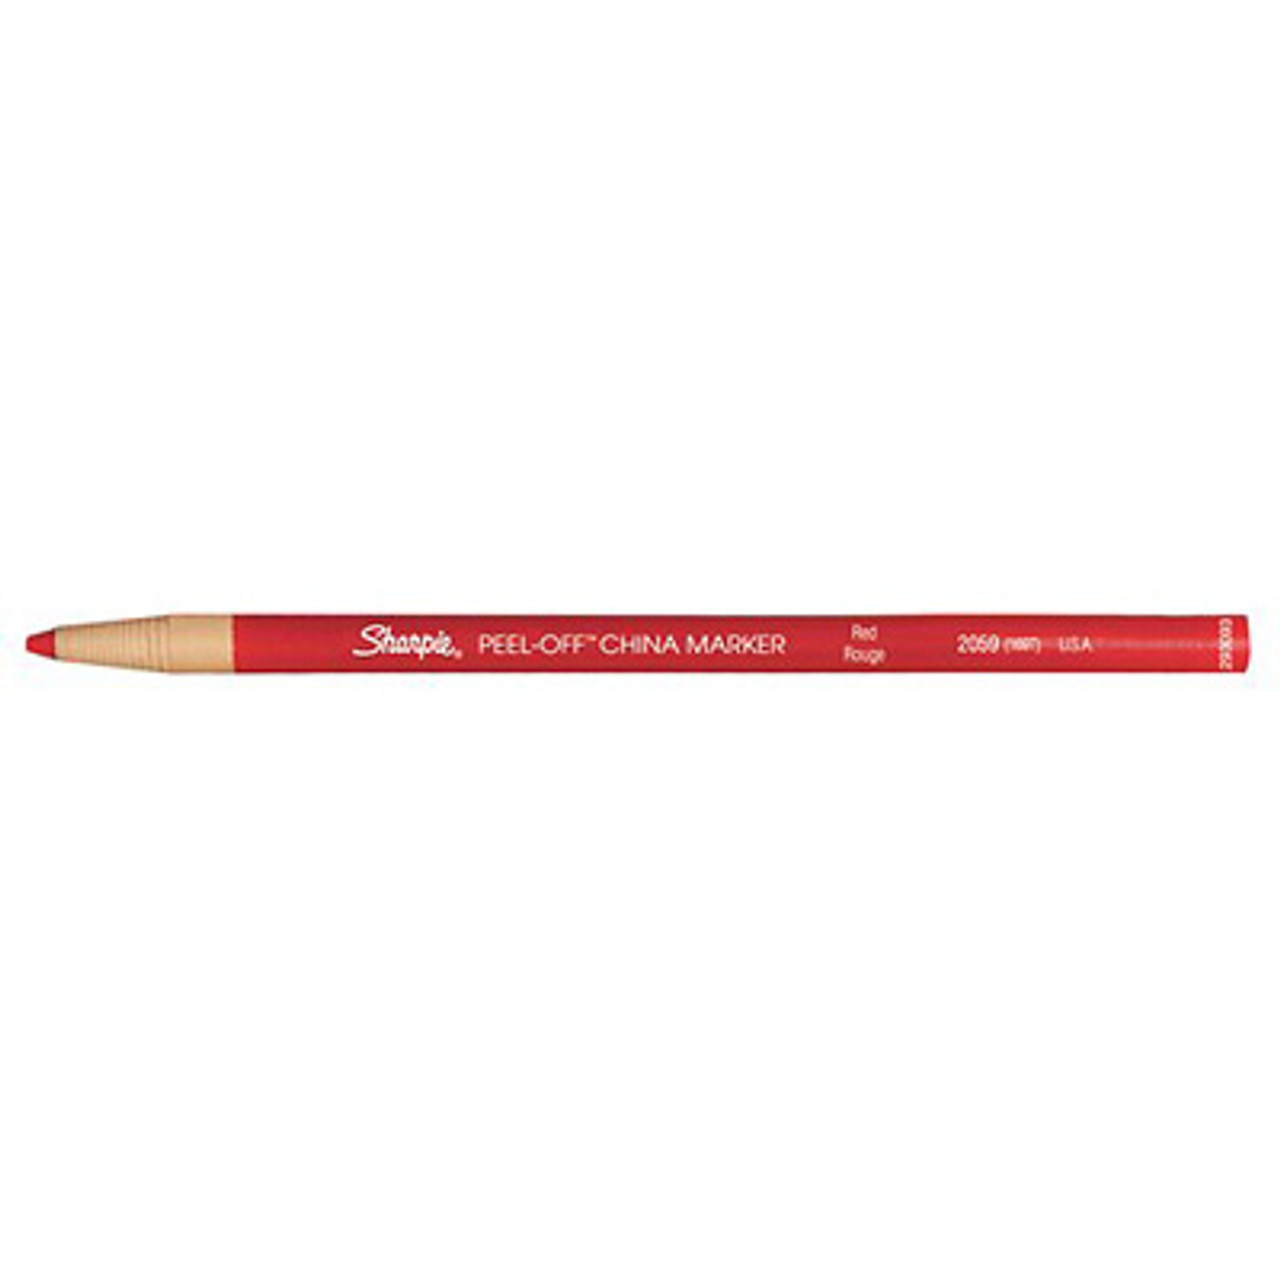 China Marker (Grease Pencil) 